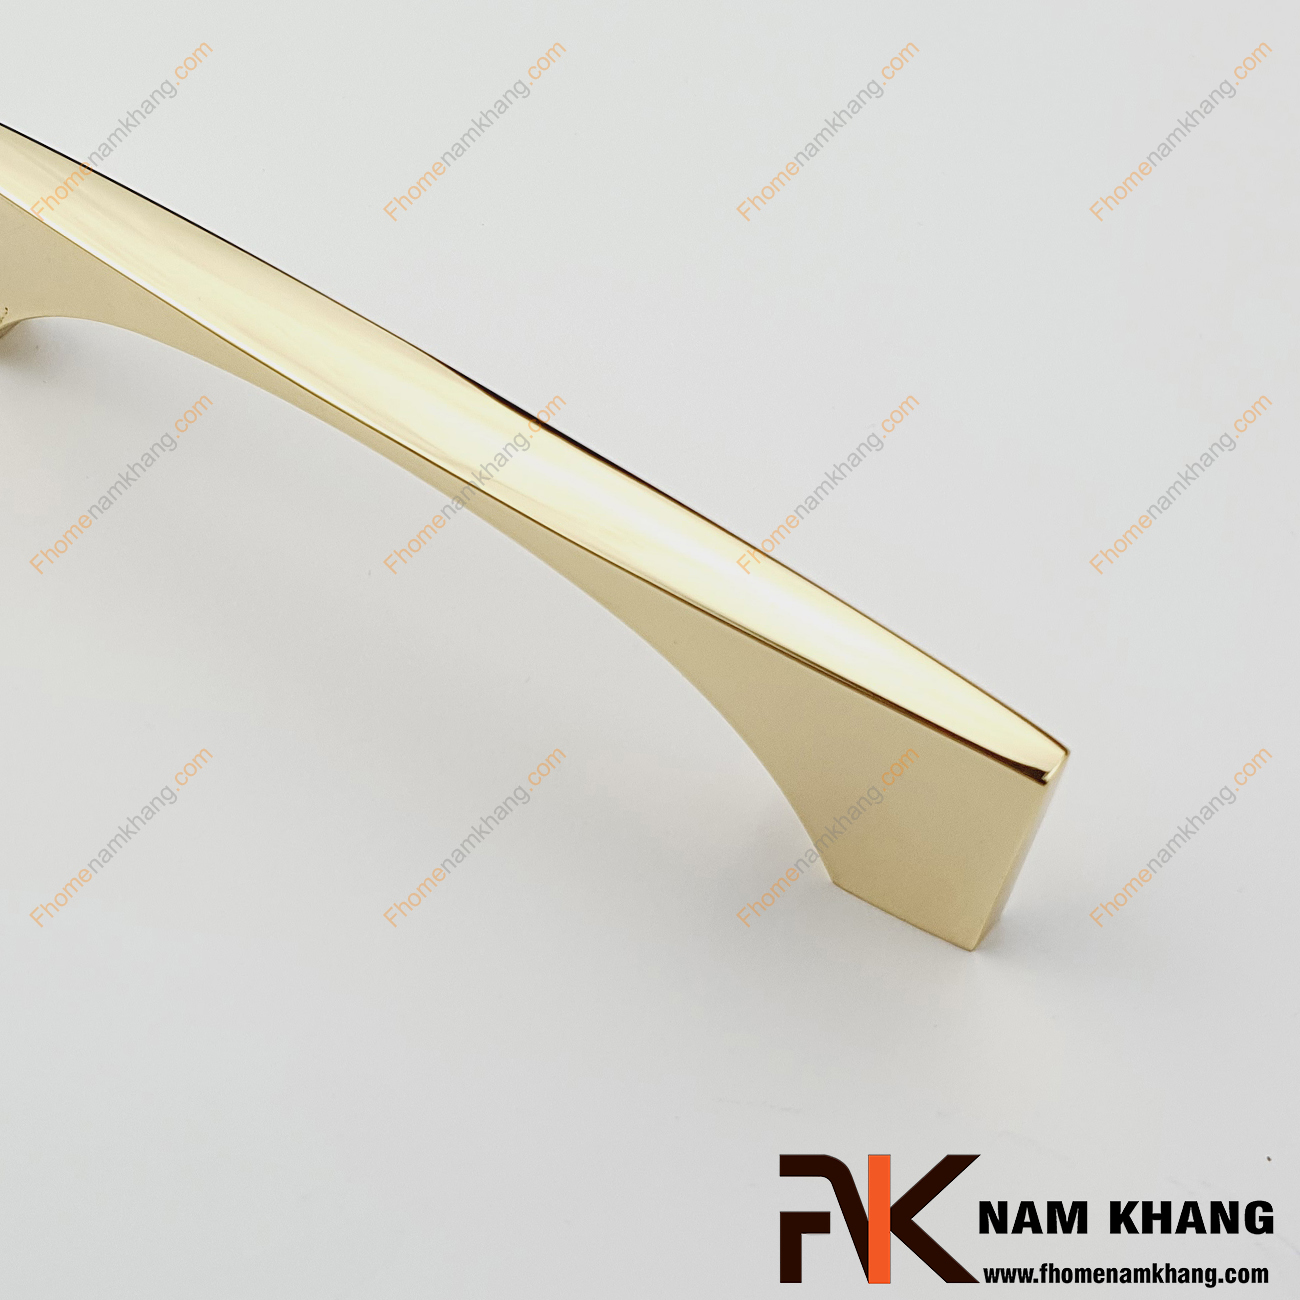 Thiết kế sản phẩm Tay nắm tủ màu vàng bóng NK290L-V có thiết kế đơn giản với phần thân đặc dạng tròn và phần đế dẹp ở hai đầu của tay nắm